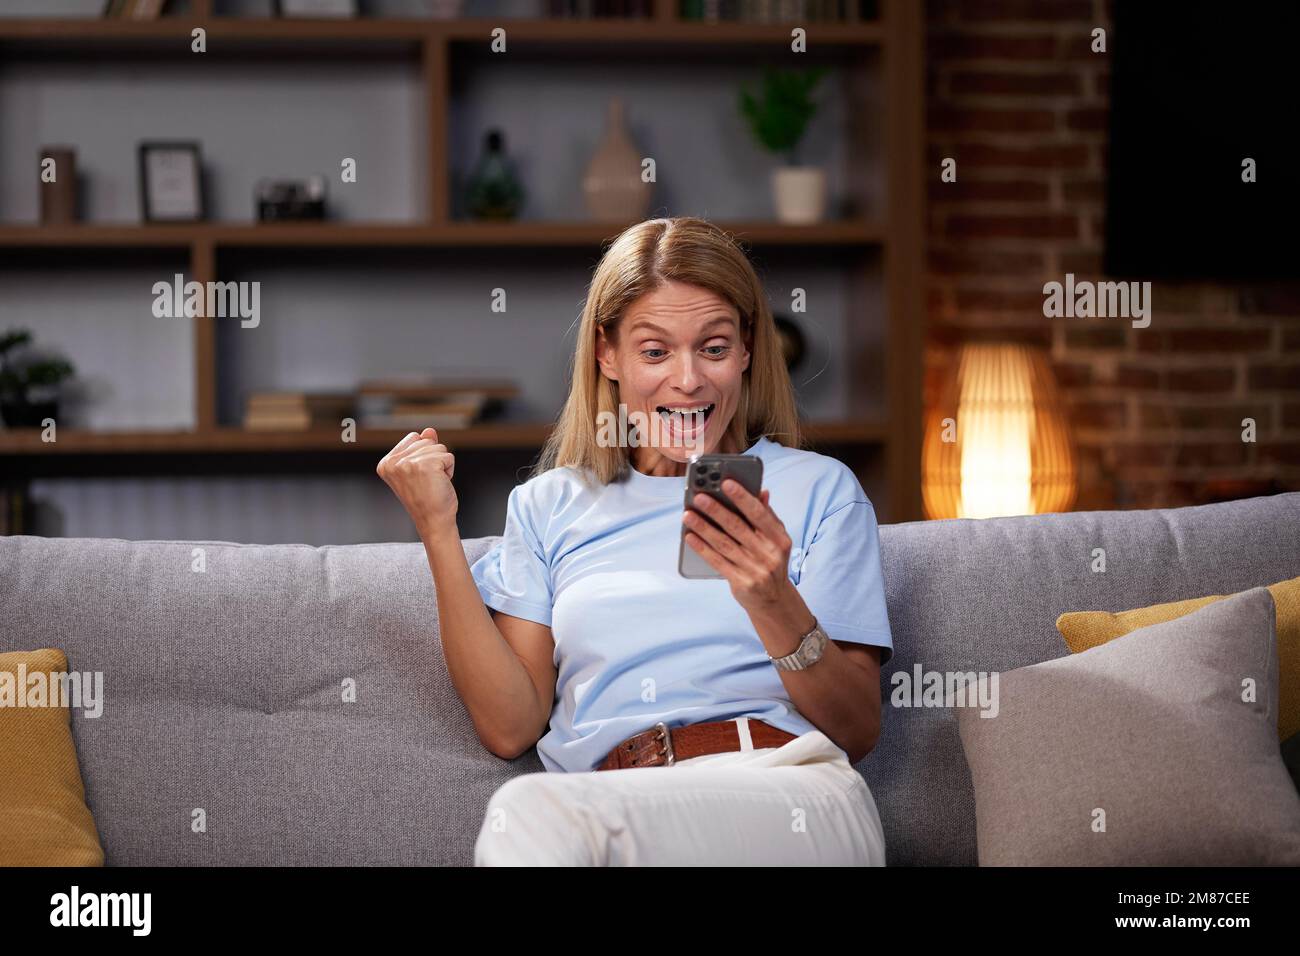 Frau feiert den Sieg, indem sie auf dem Sofa mit Smartphone Ja-Geste zeigt. Wir waren überglücklich, zu gewinnen, lasen die guten Nachrichten am Telefon und feierten den Erfolg unter Stockfoto